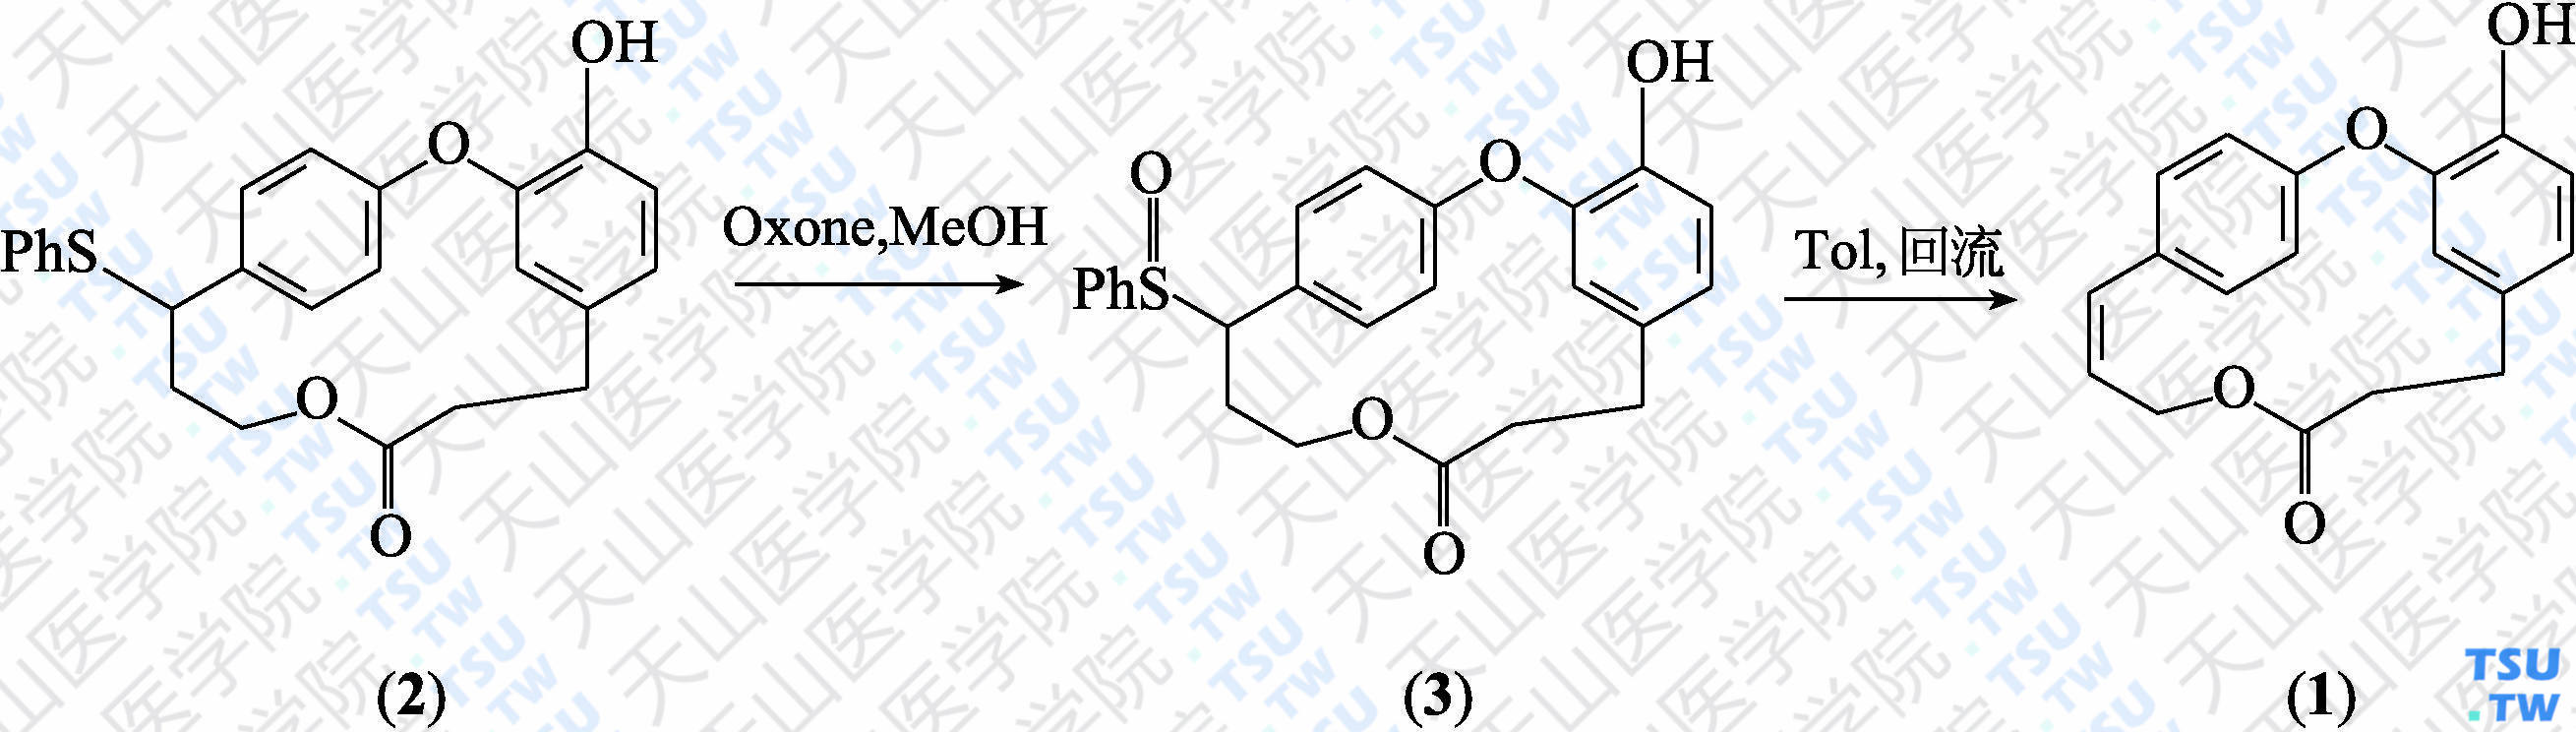 康普瑞汀D-2（分子式：C<sub>18</sub>H<sub>16</sub>O<sub>4</sub>）的合成方法路线及其结构式